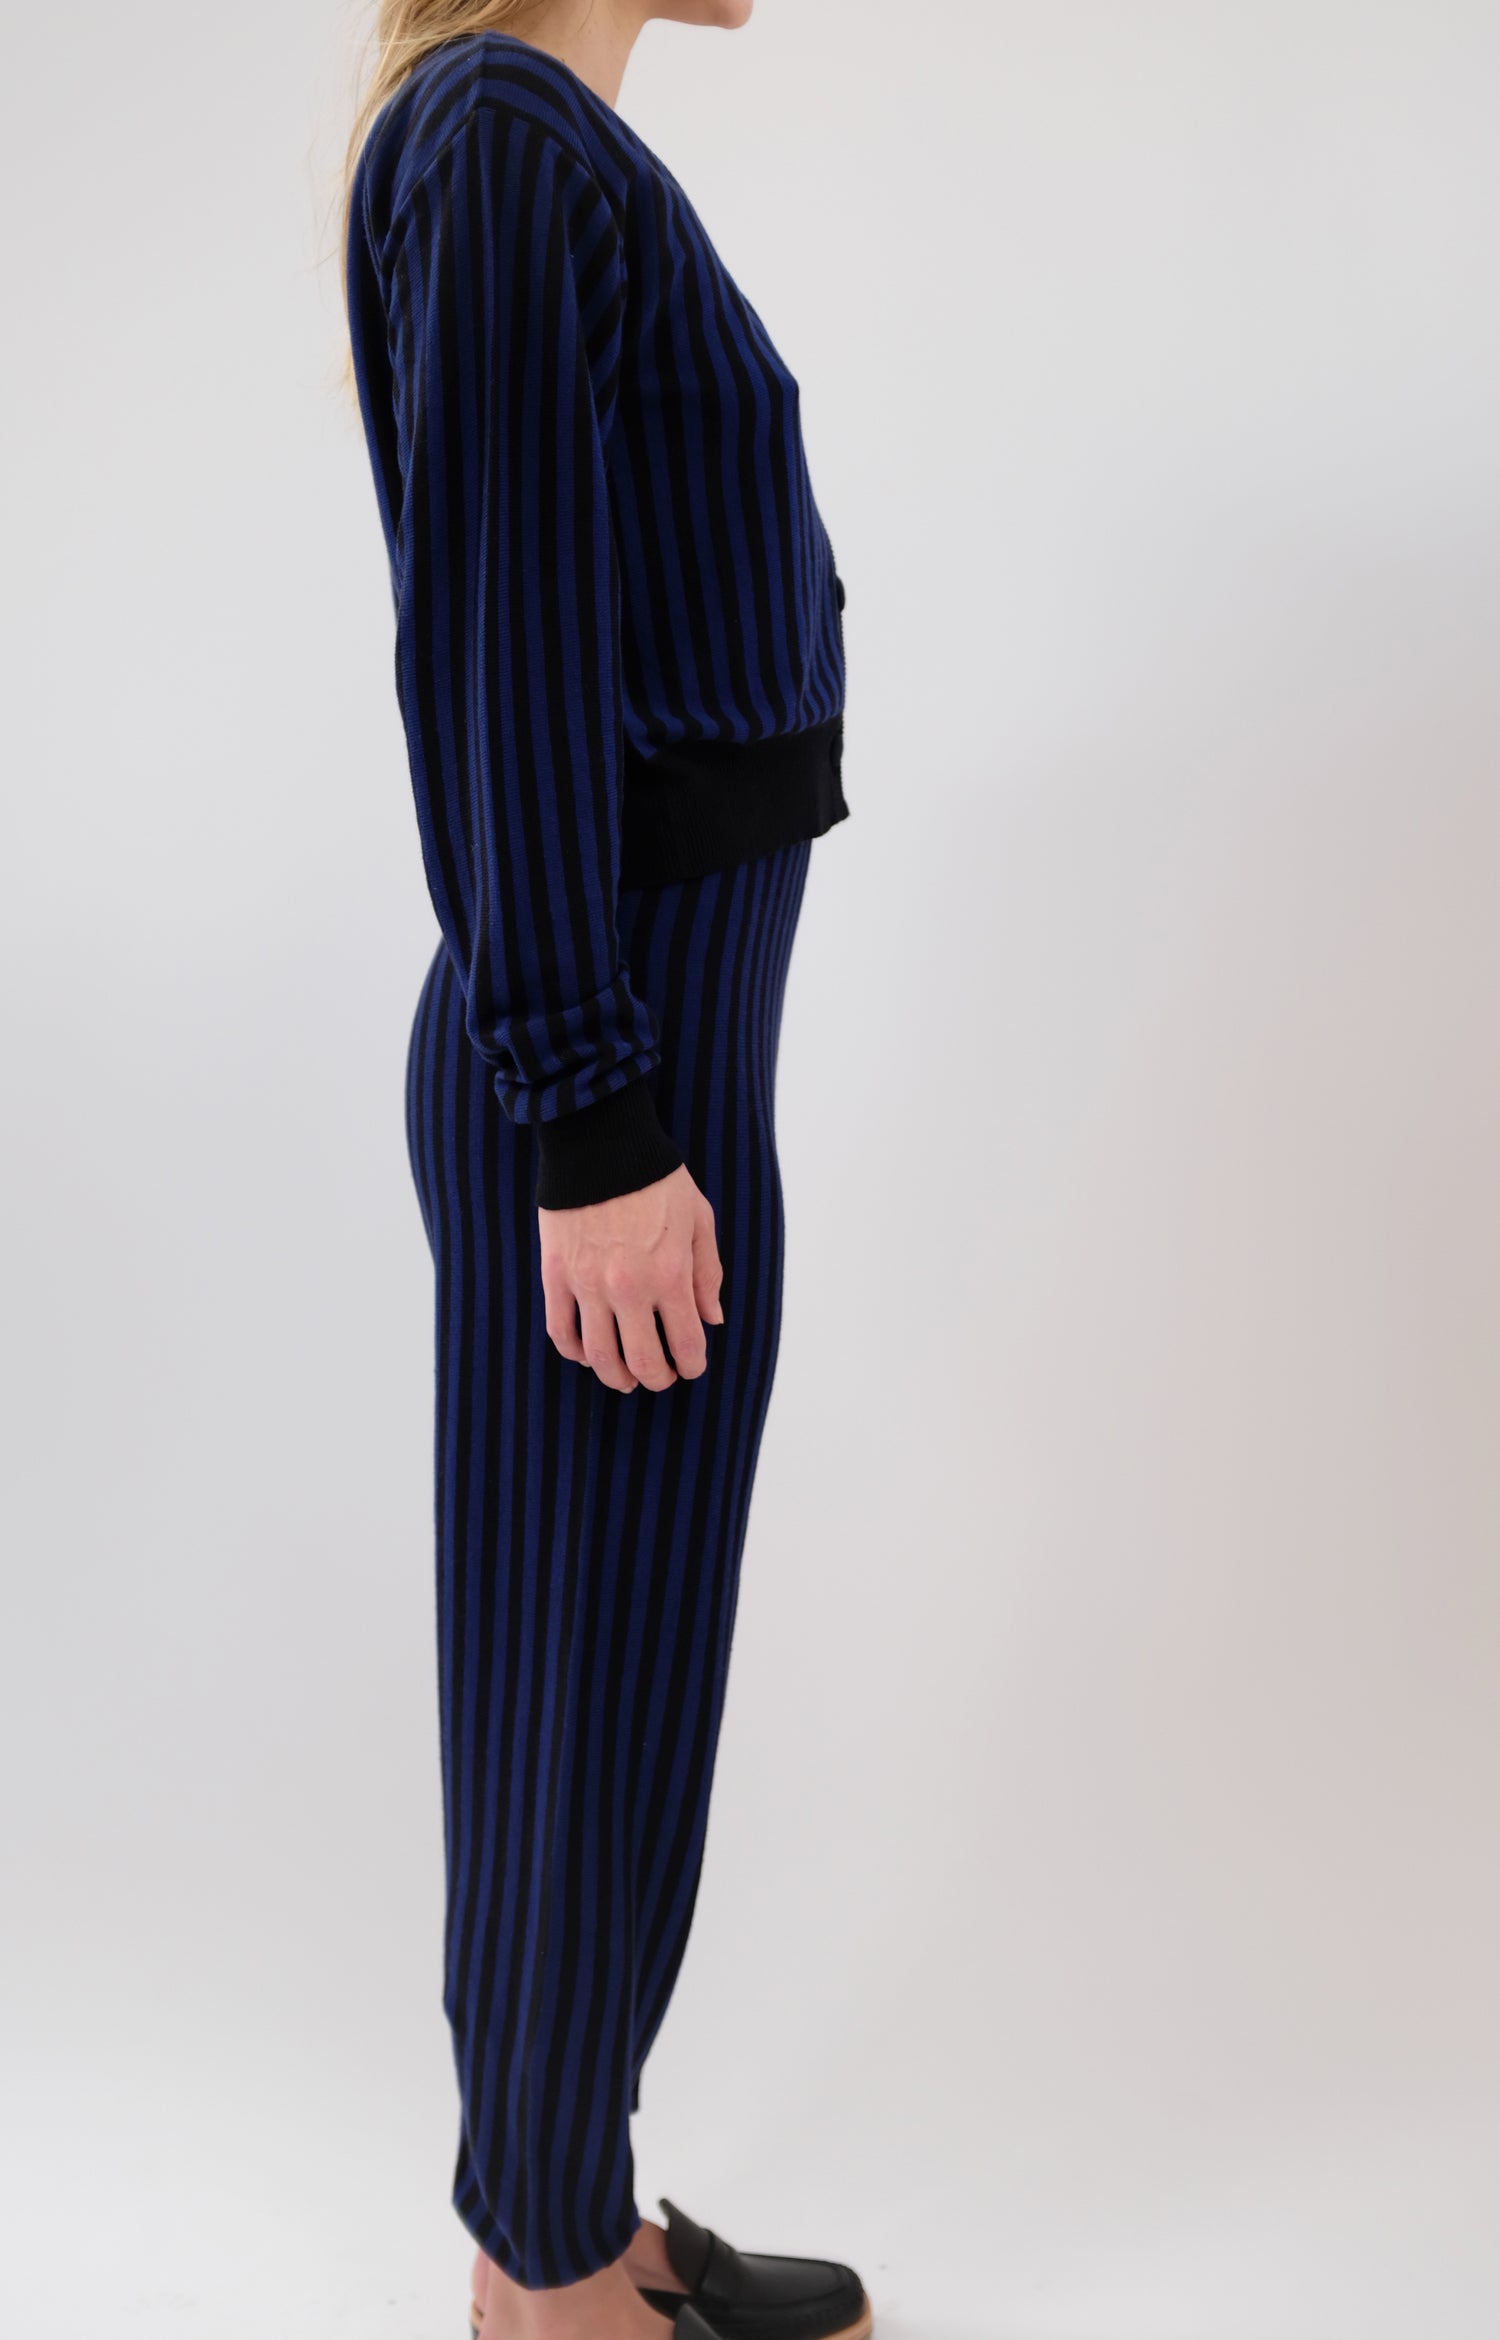 Beklina Cotton Knit Pants Striped Black/Medianoche